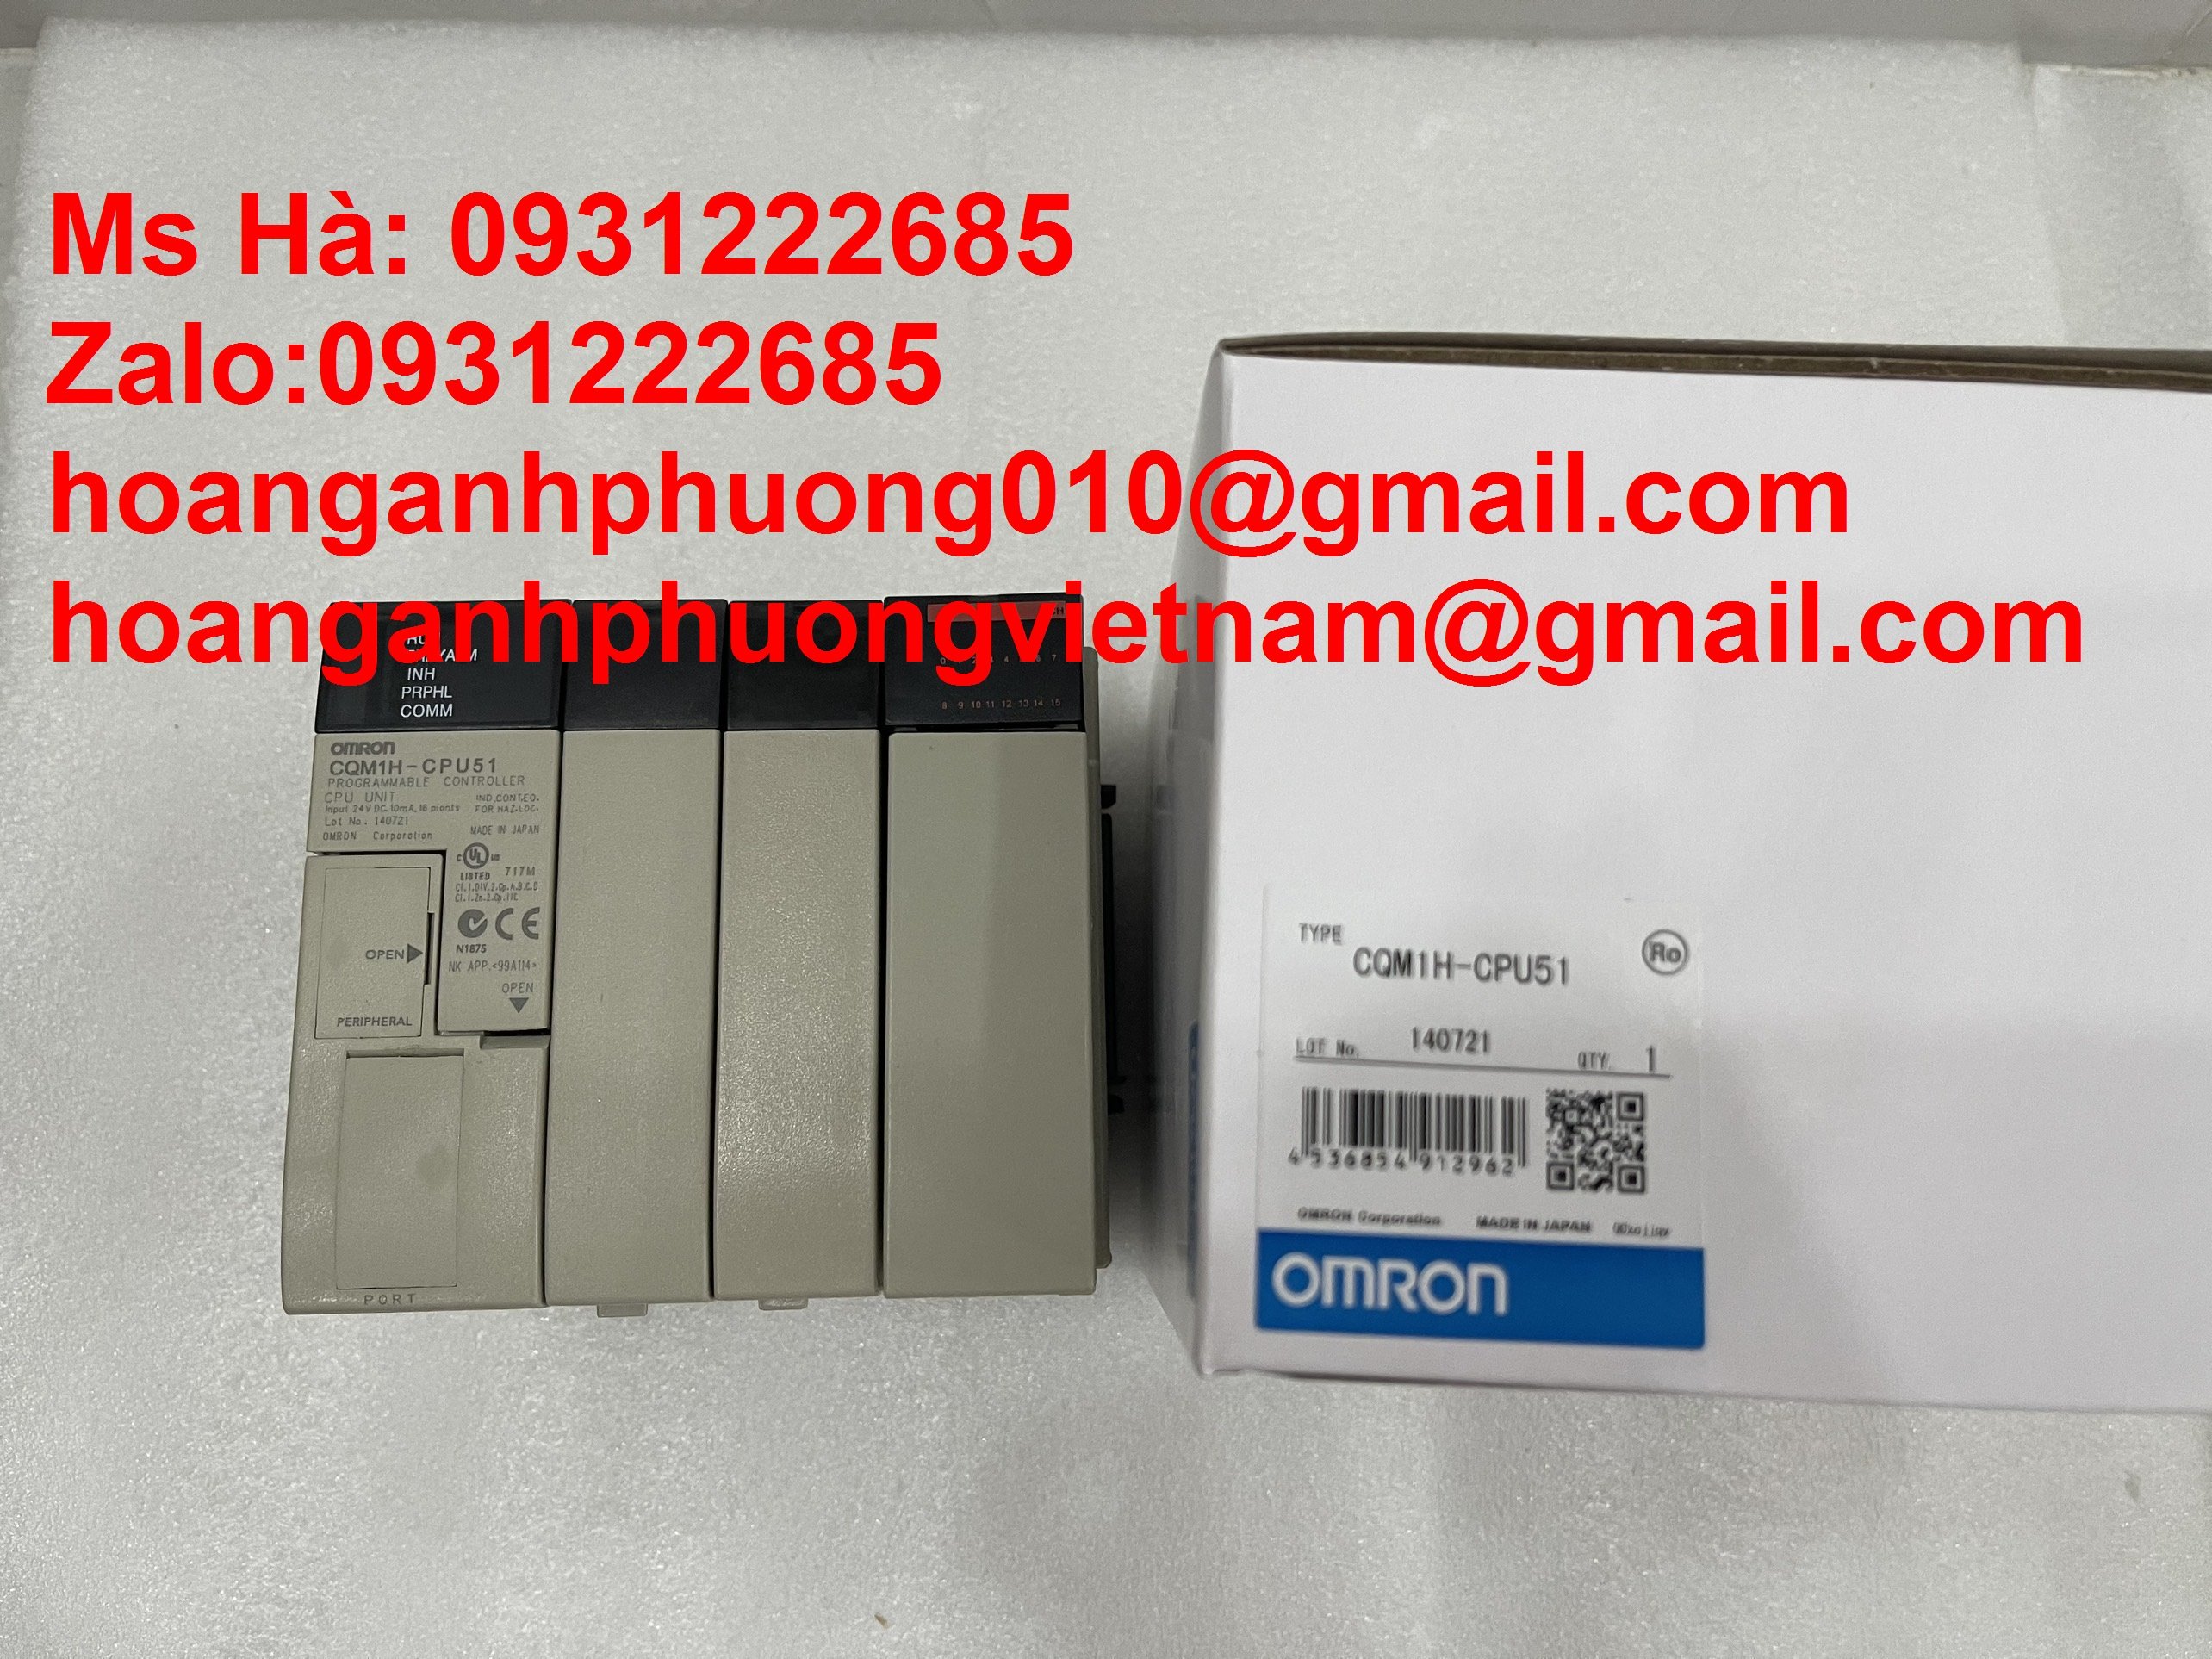 Cần bán dòng PLC lập trình CQM1H-CPU51 hãng omron